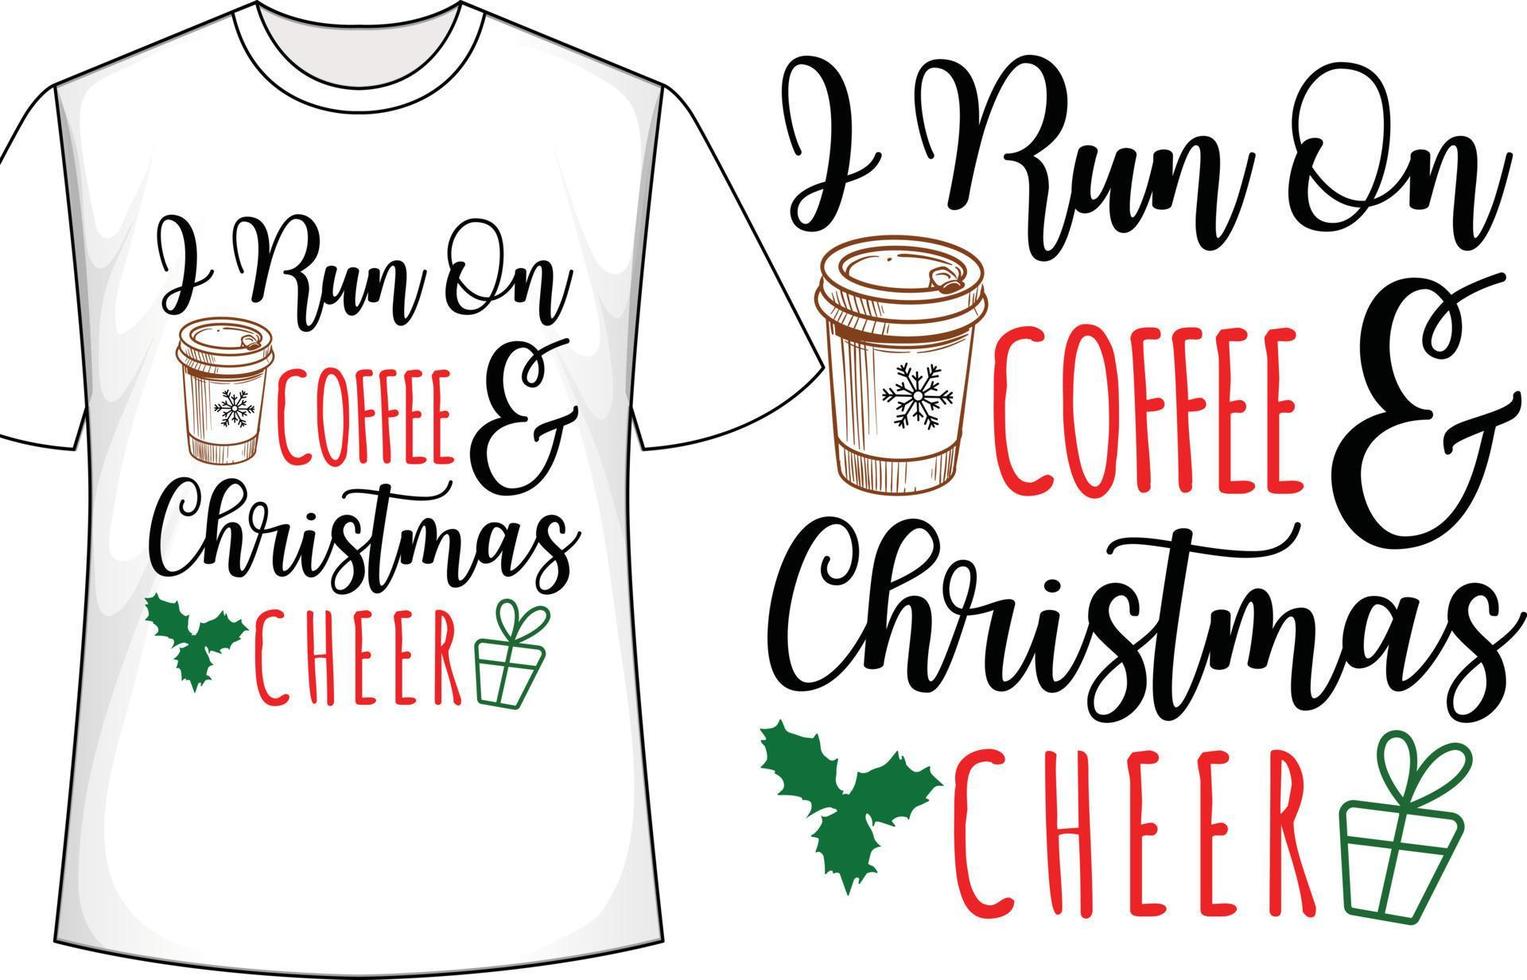 io correre su caffè e Natale rallegrare Natale t camicia design vettore